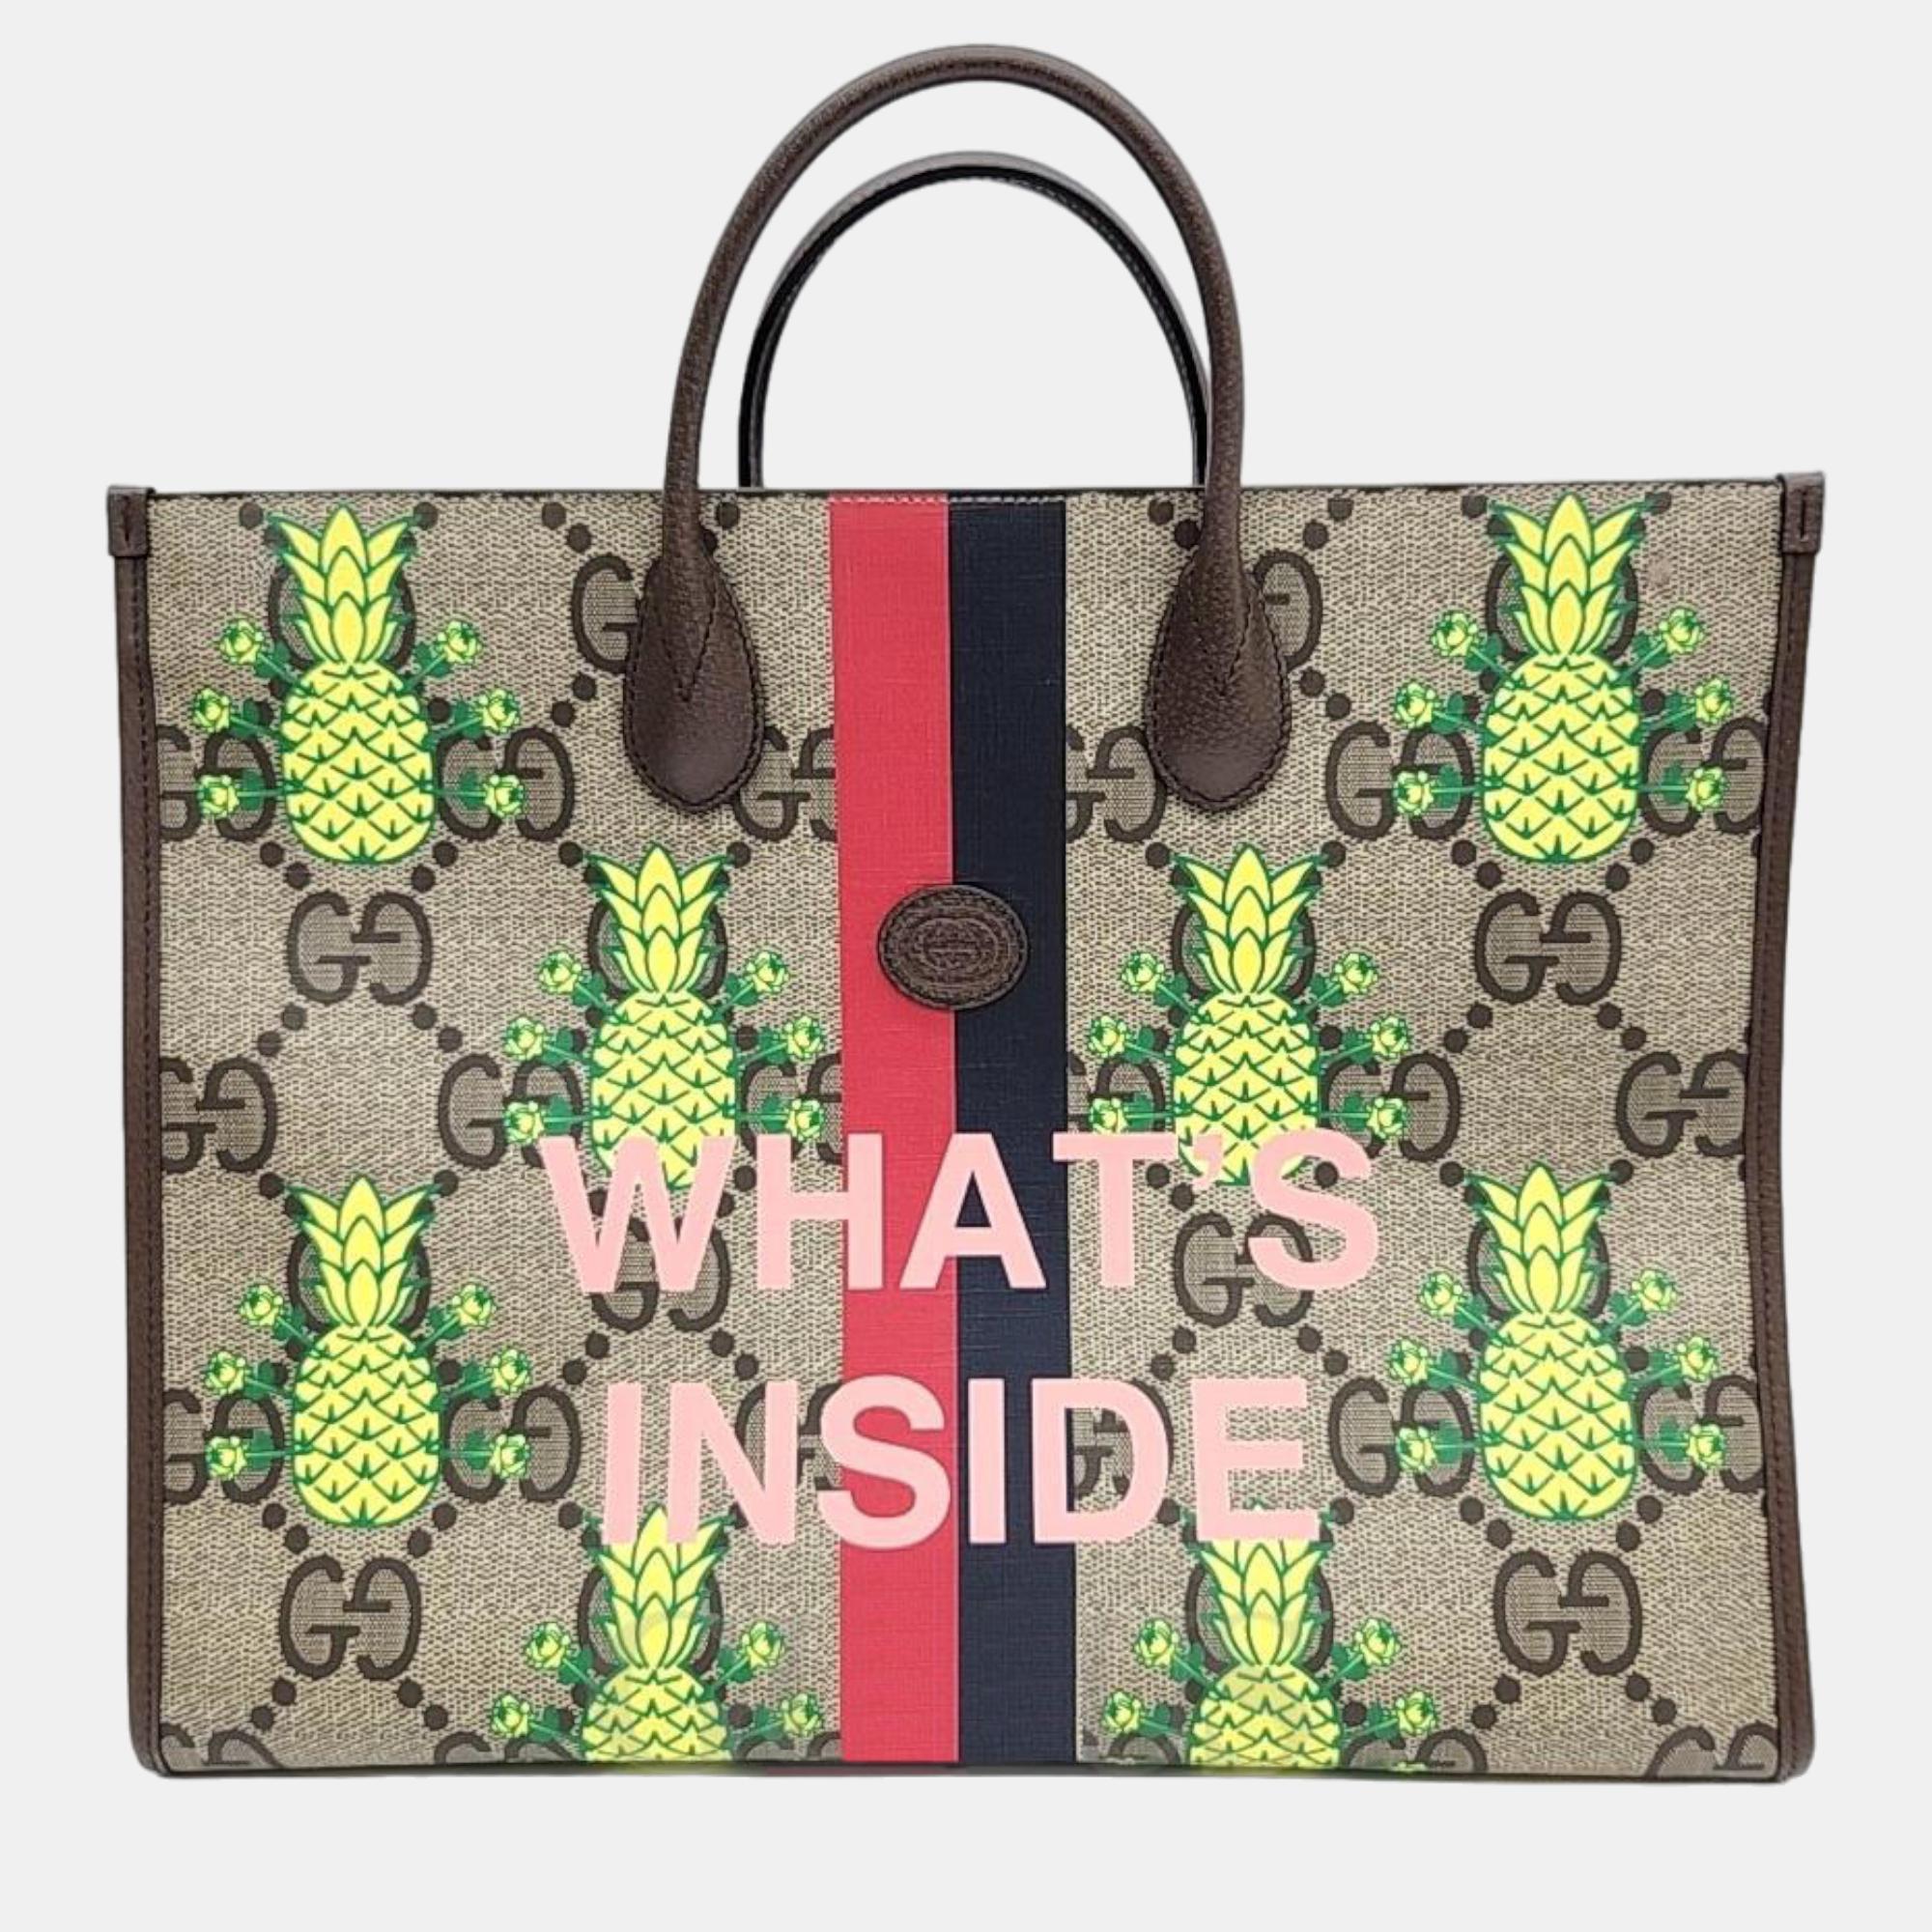 Gucci gg pineapple supreme top handle tote bag (659980)